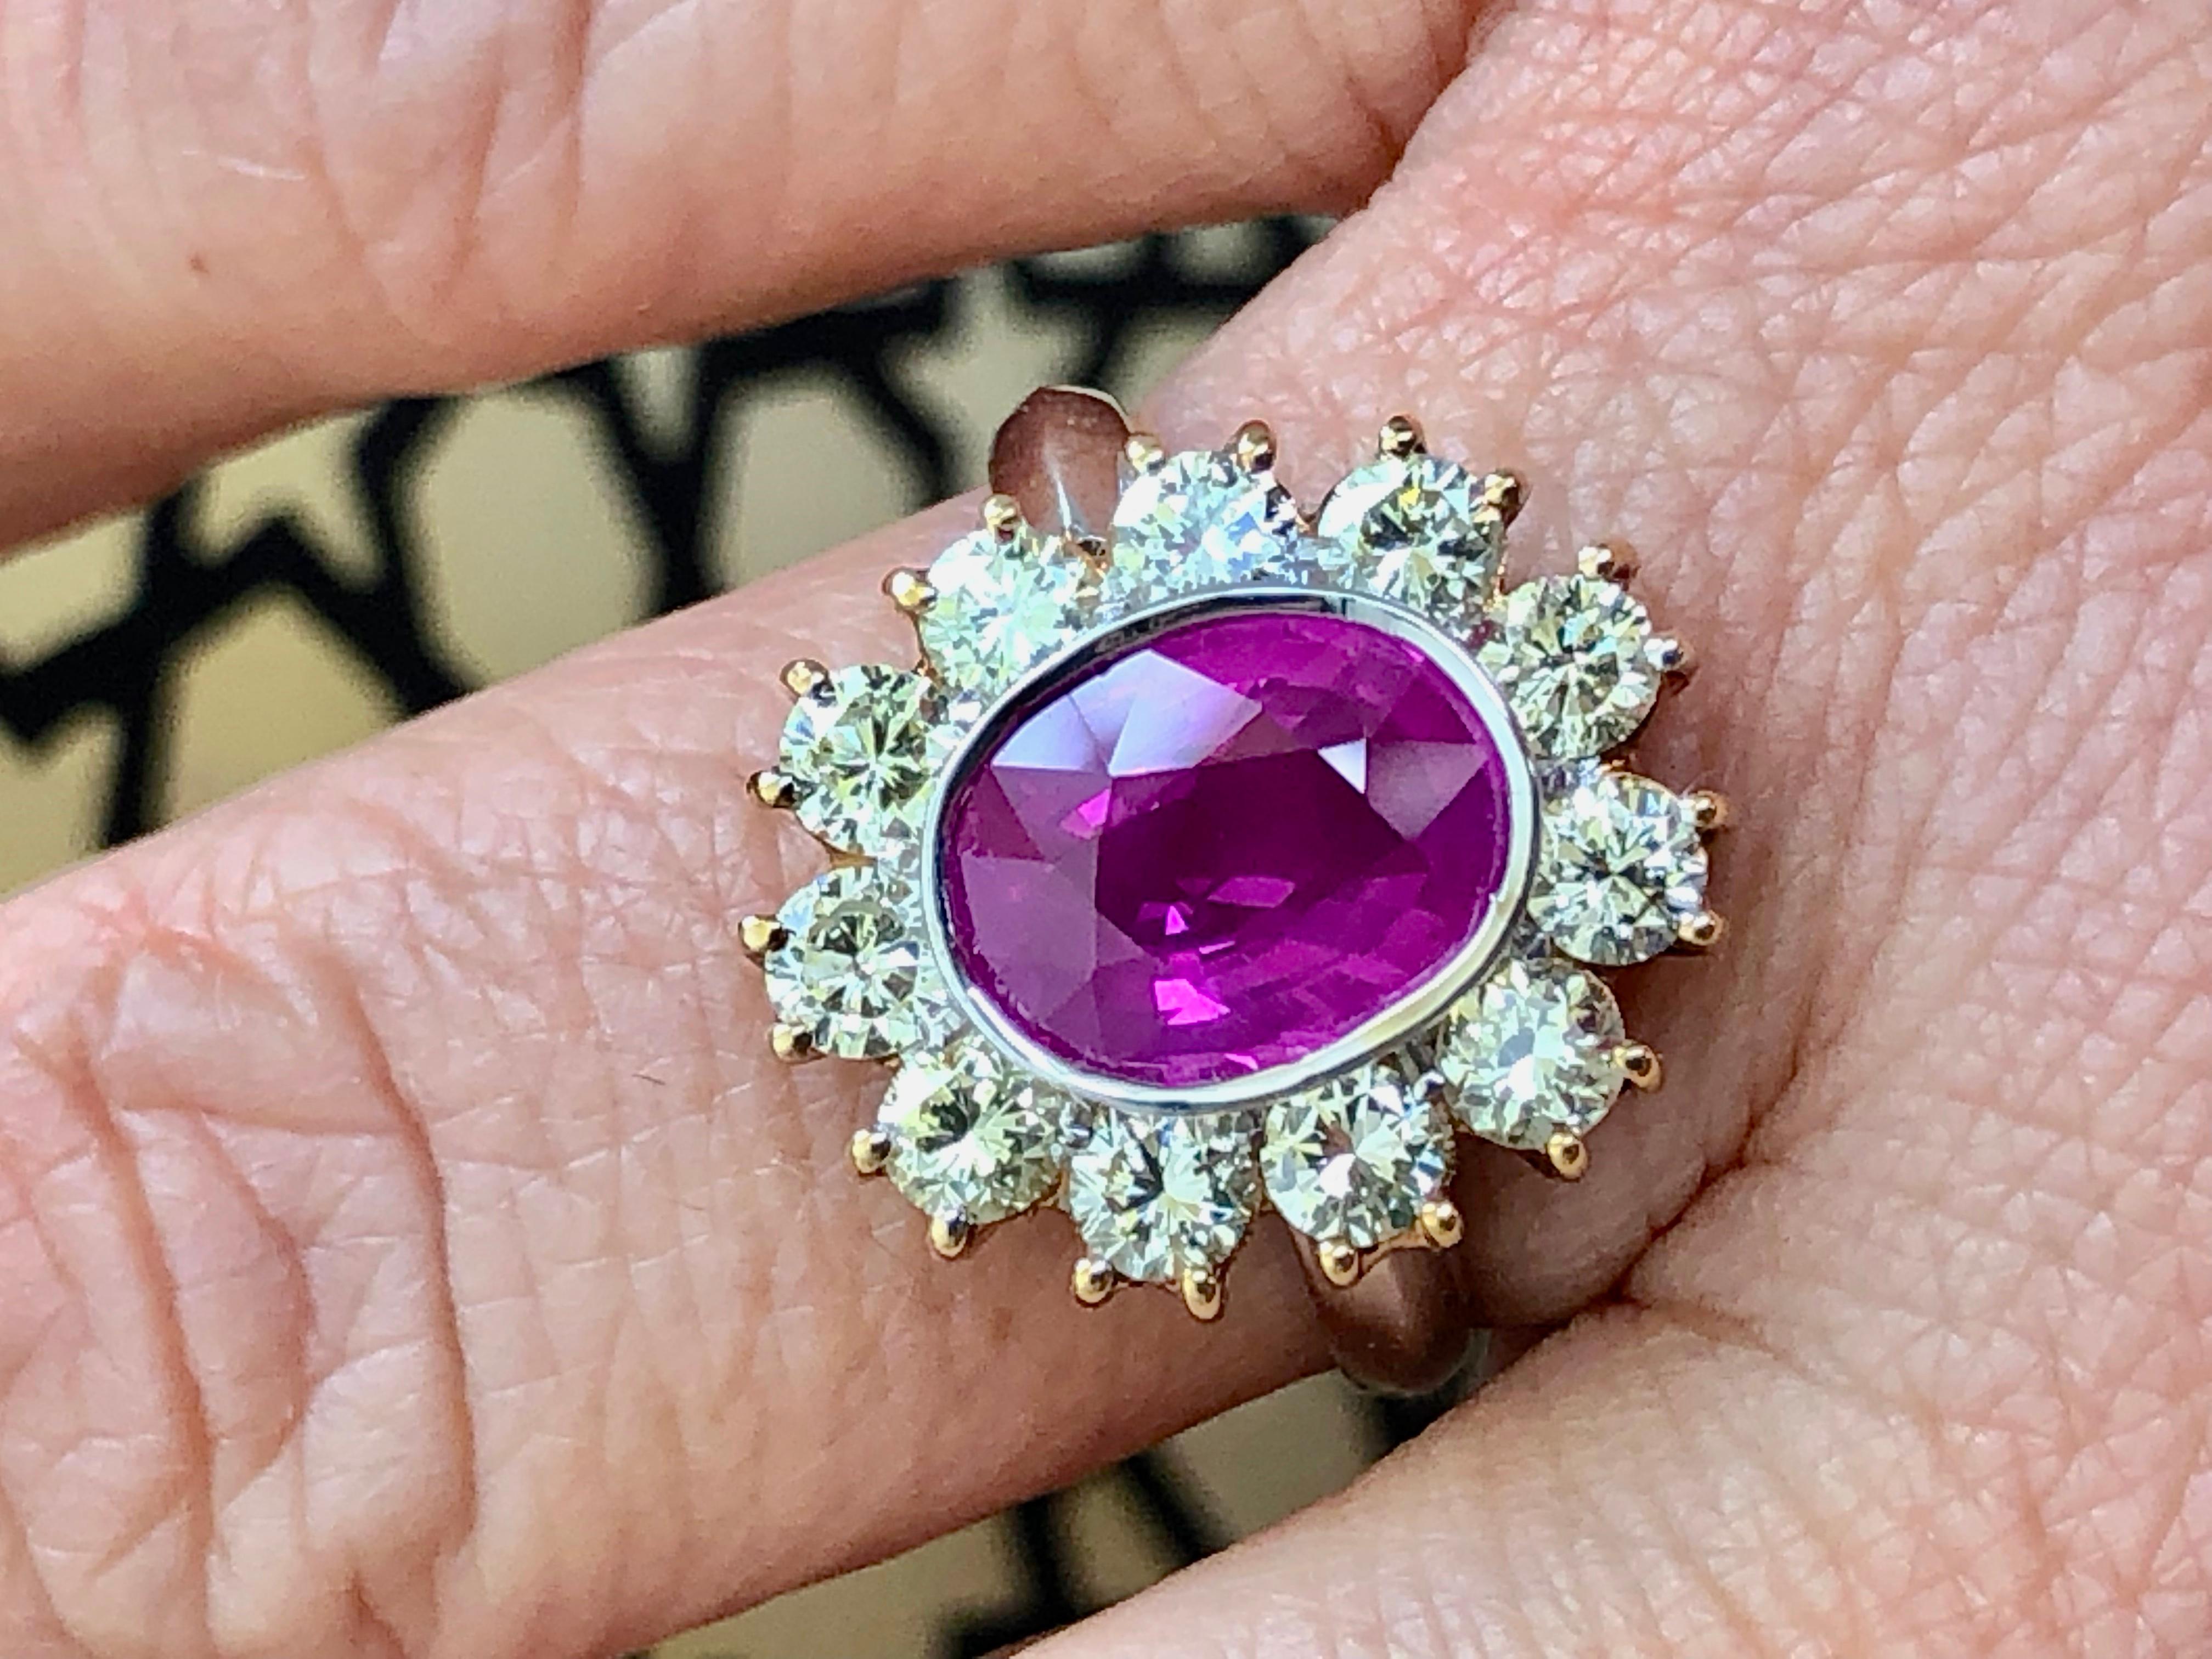 Ein schöner Ring mit einem seltenen ovalen rötlich-rosa Saphir von 3,10 Karat und runden Diamanten von 1,54 Karat. Der Saphir stammt aus Birma.
Primäre Steine: Burma-Saphir
Form oder Schliff: Ovaler Schliff
Durchschnittliche Farbe/Klarheit: Hot